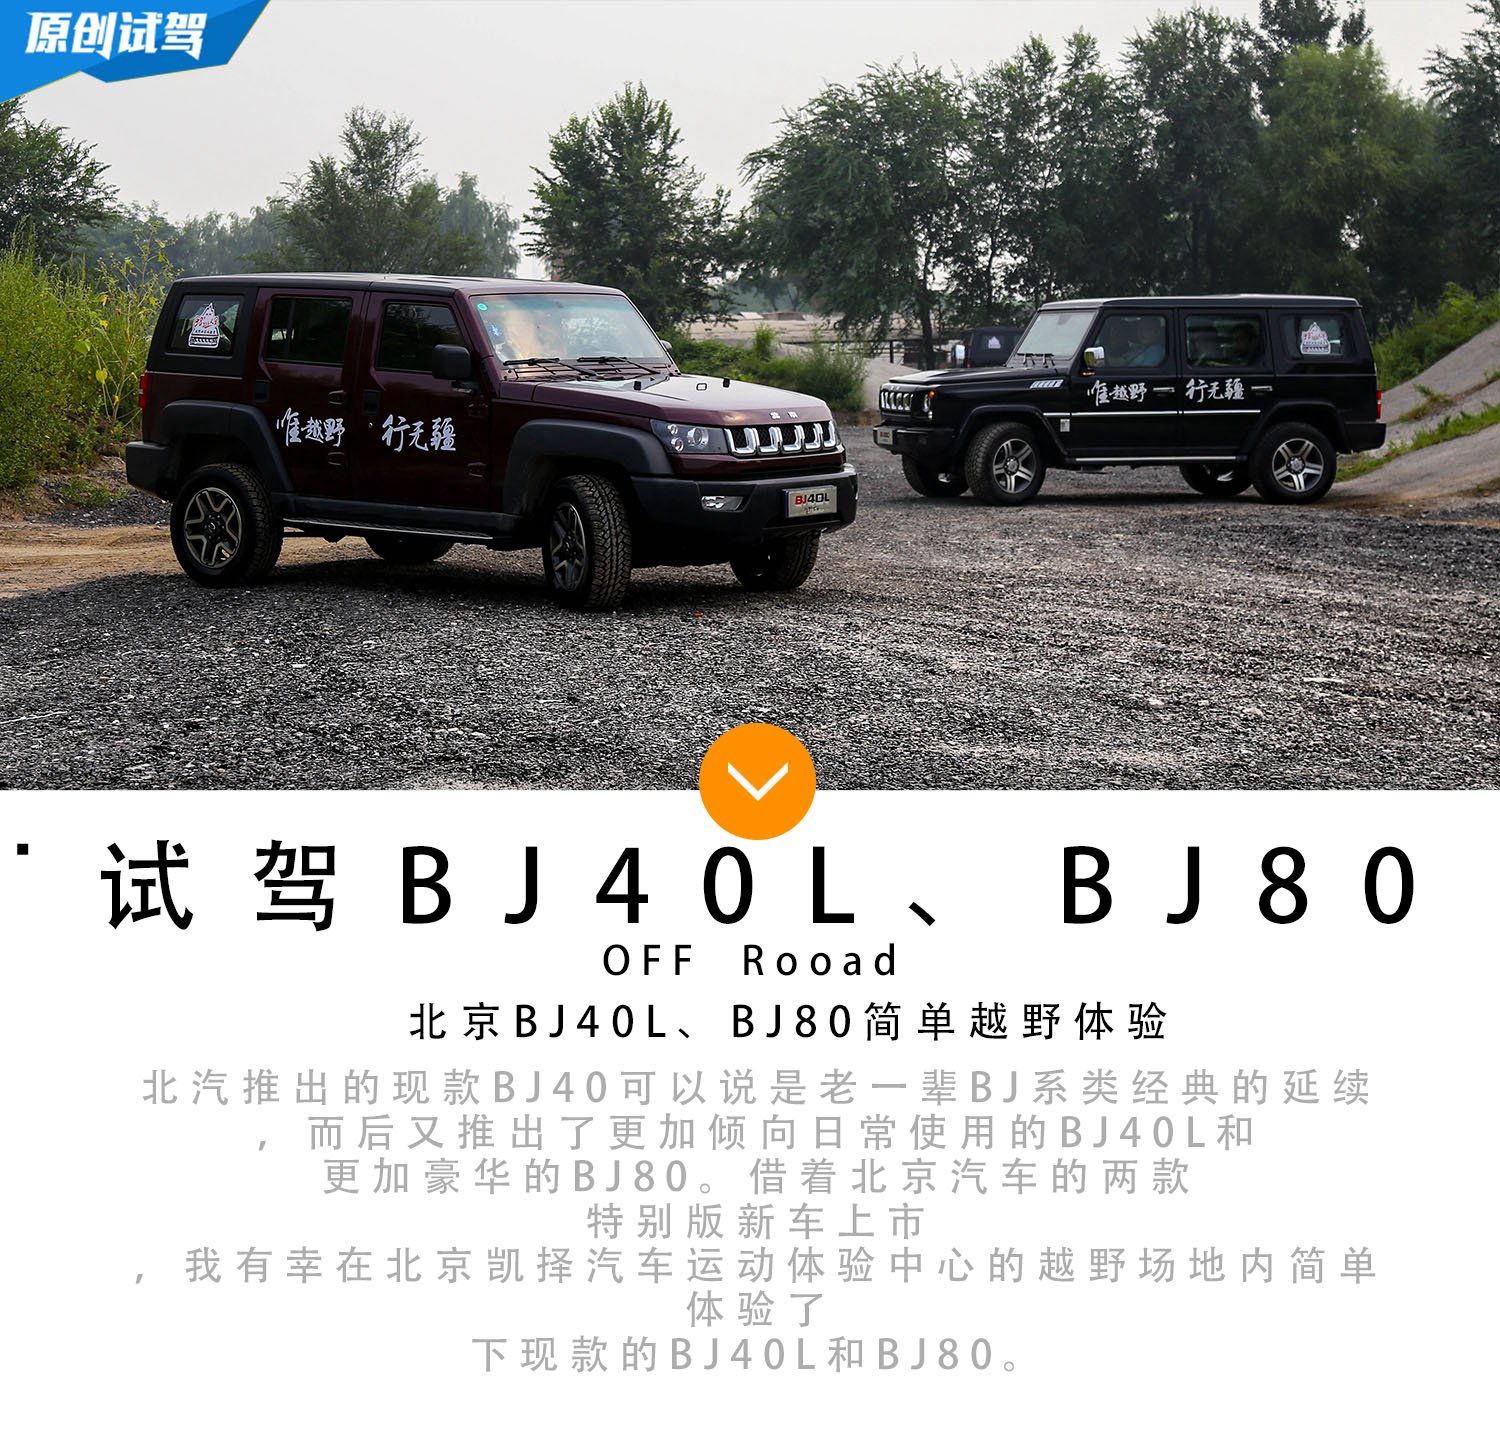 爱上硬汉 北京BJ40L、BJ80简单越野体验